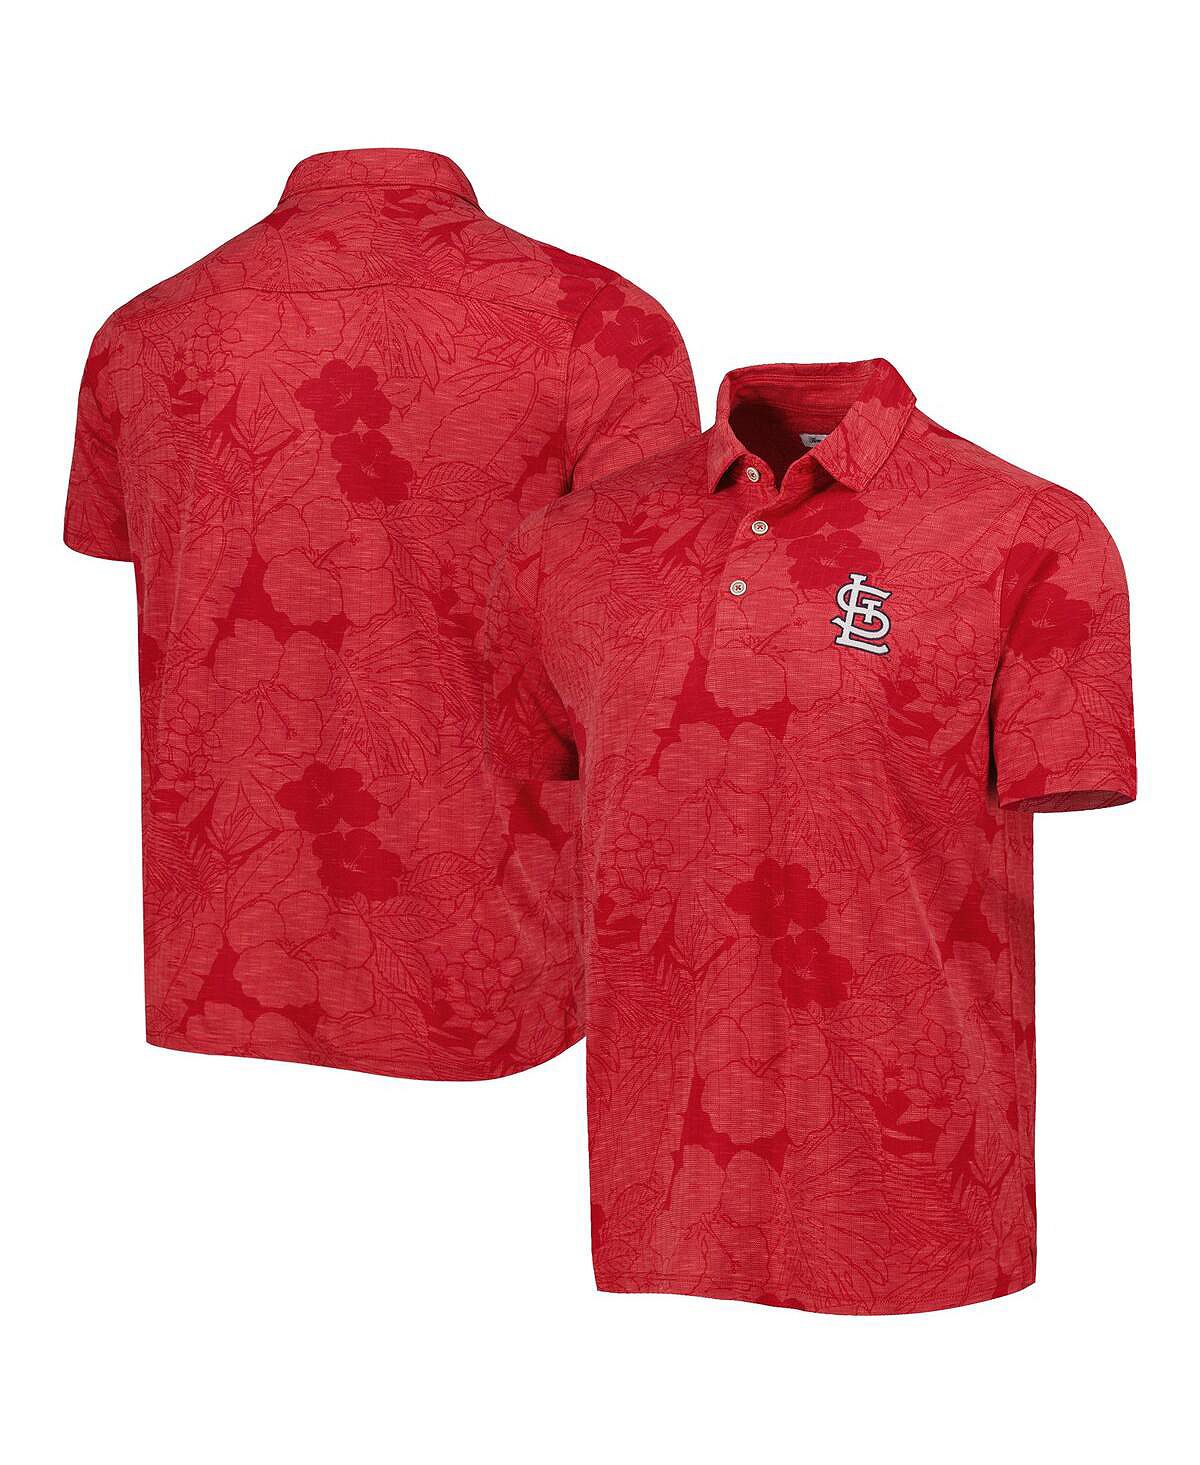 Мужская красная рубашка-поло St. Louis Cardinals Miramar Blooms Tommy Bahama рубашка поло pina grande tommy bahama синий